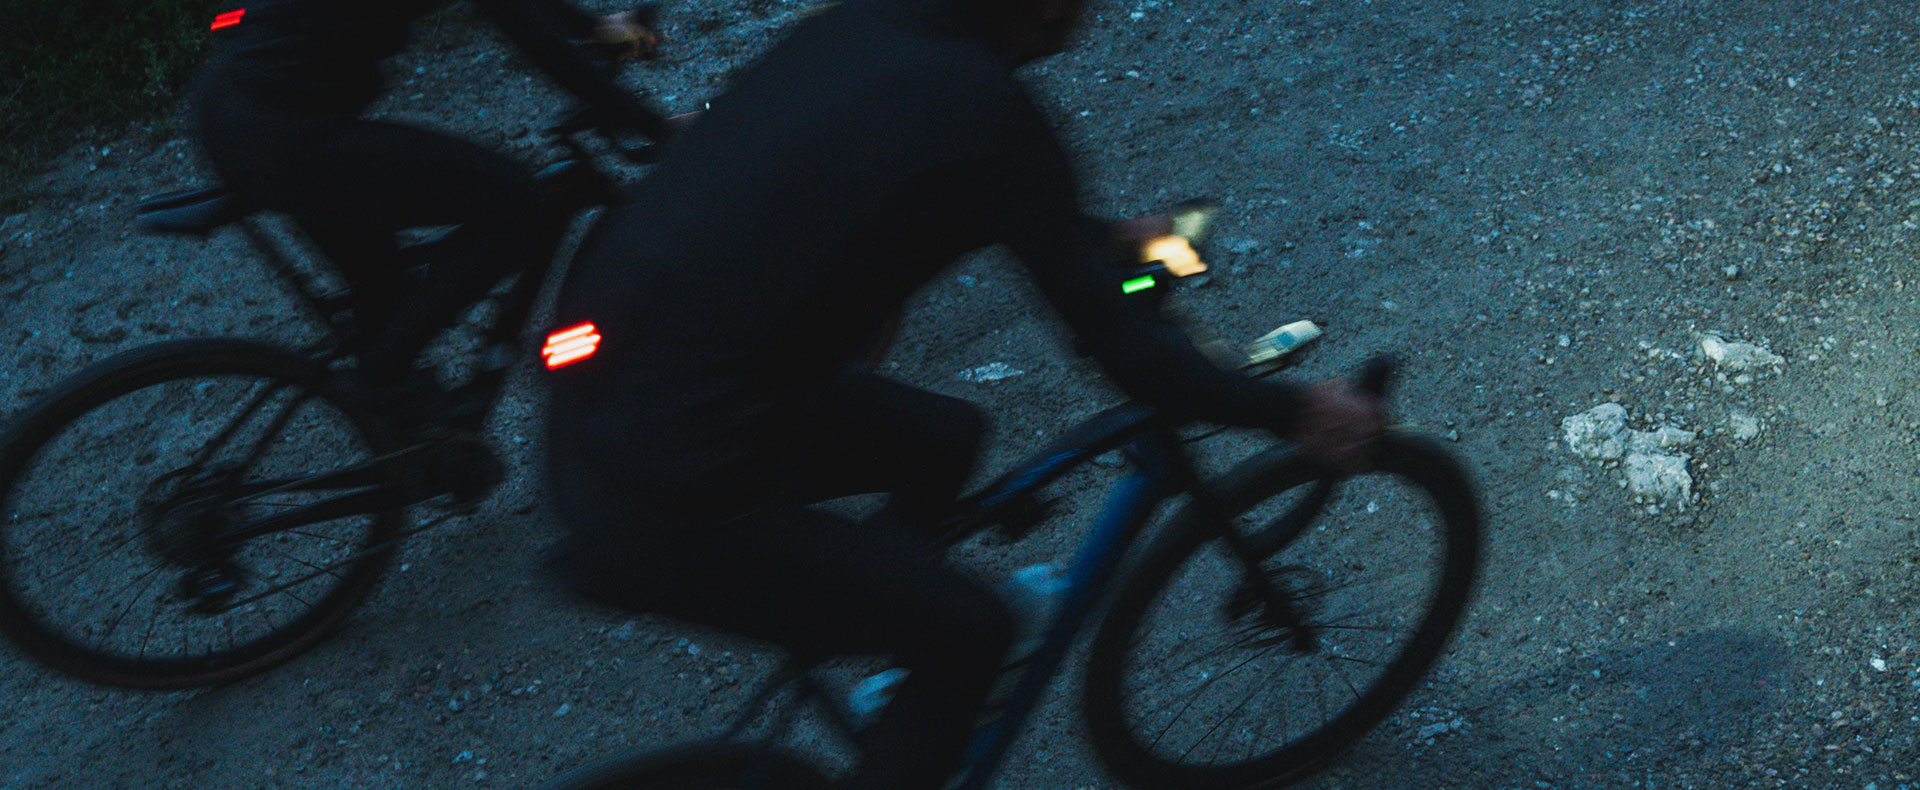 Maillot ciclista con luz seguridad INVERSE